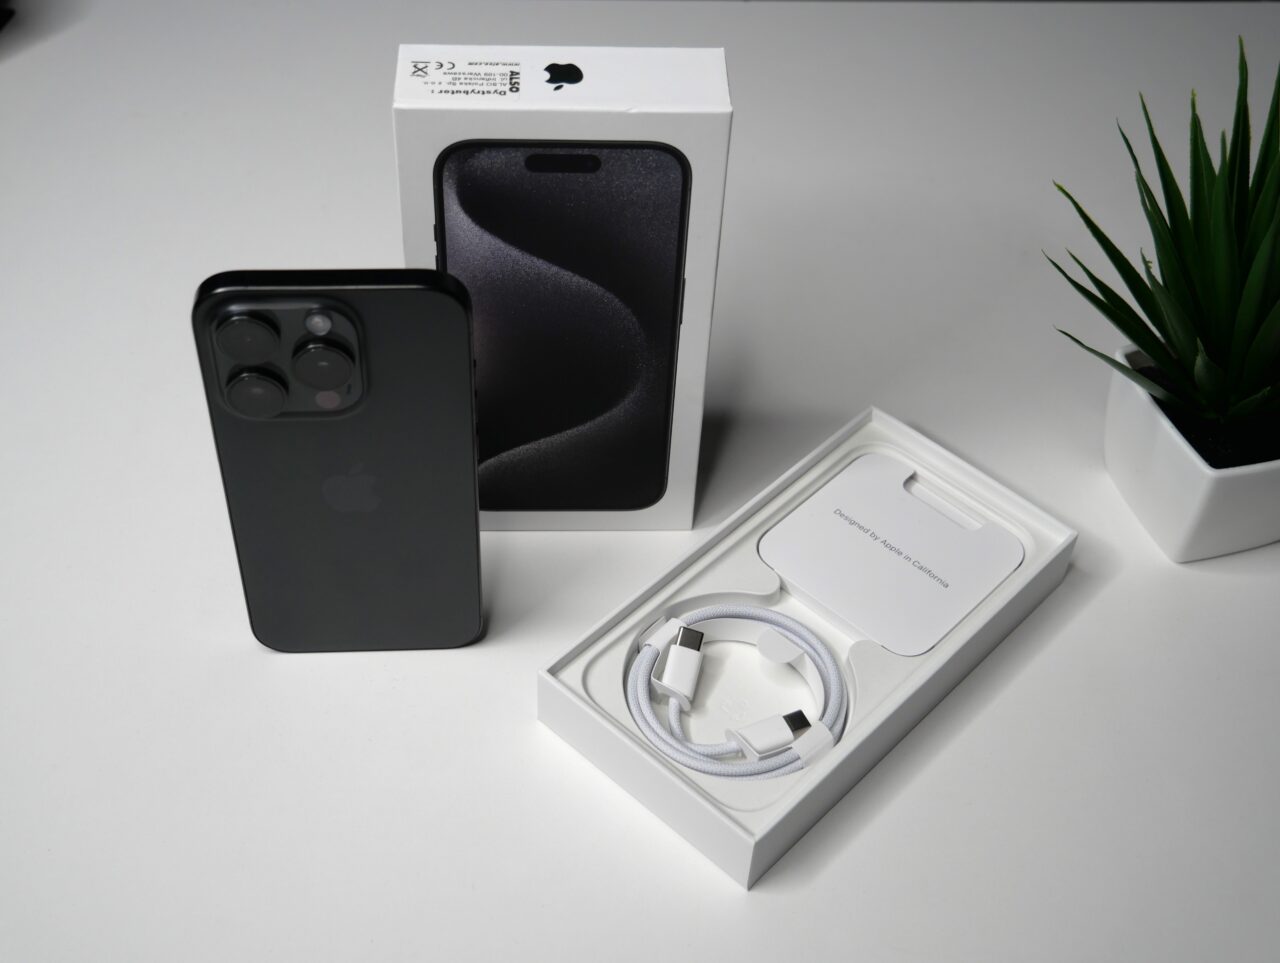 Czarny iPhone z potrójnym aparatem umieszczony obok otwartego pudełka, wewnątrz którego znajduje się kabel do ładowania, przy obecności pudełka od iPhone'a i doniczki z zieloną rośliną.